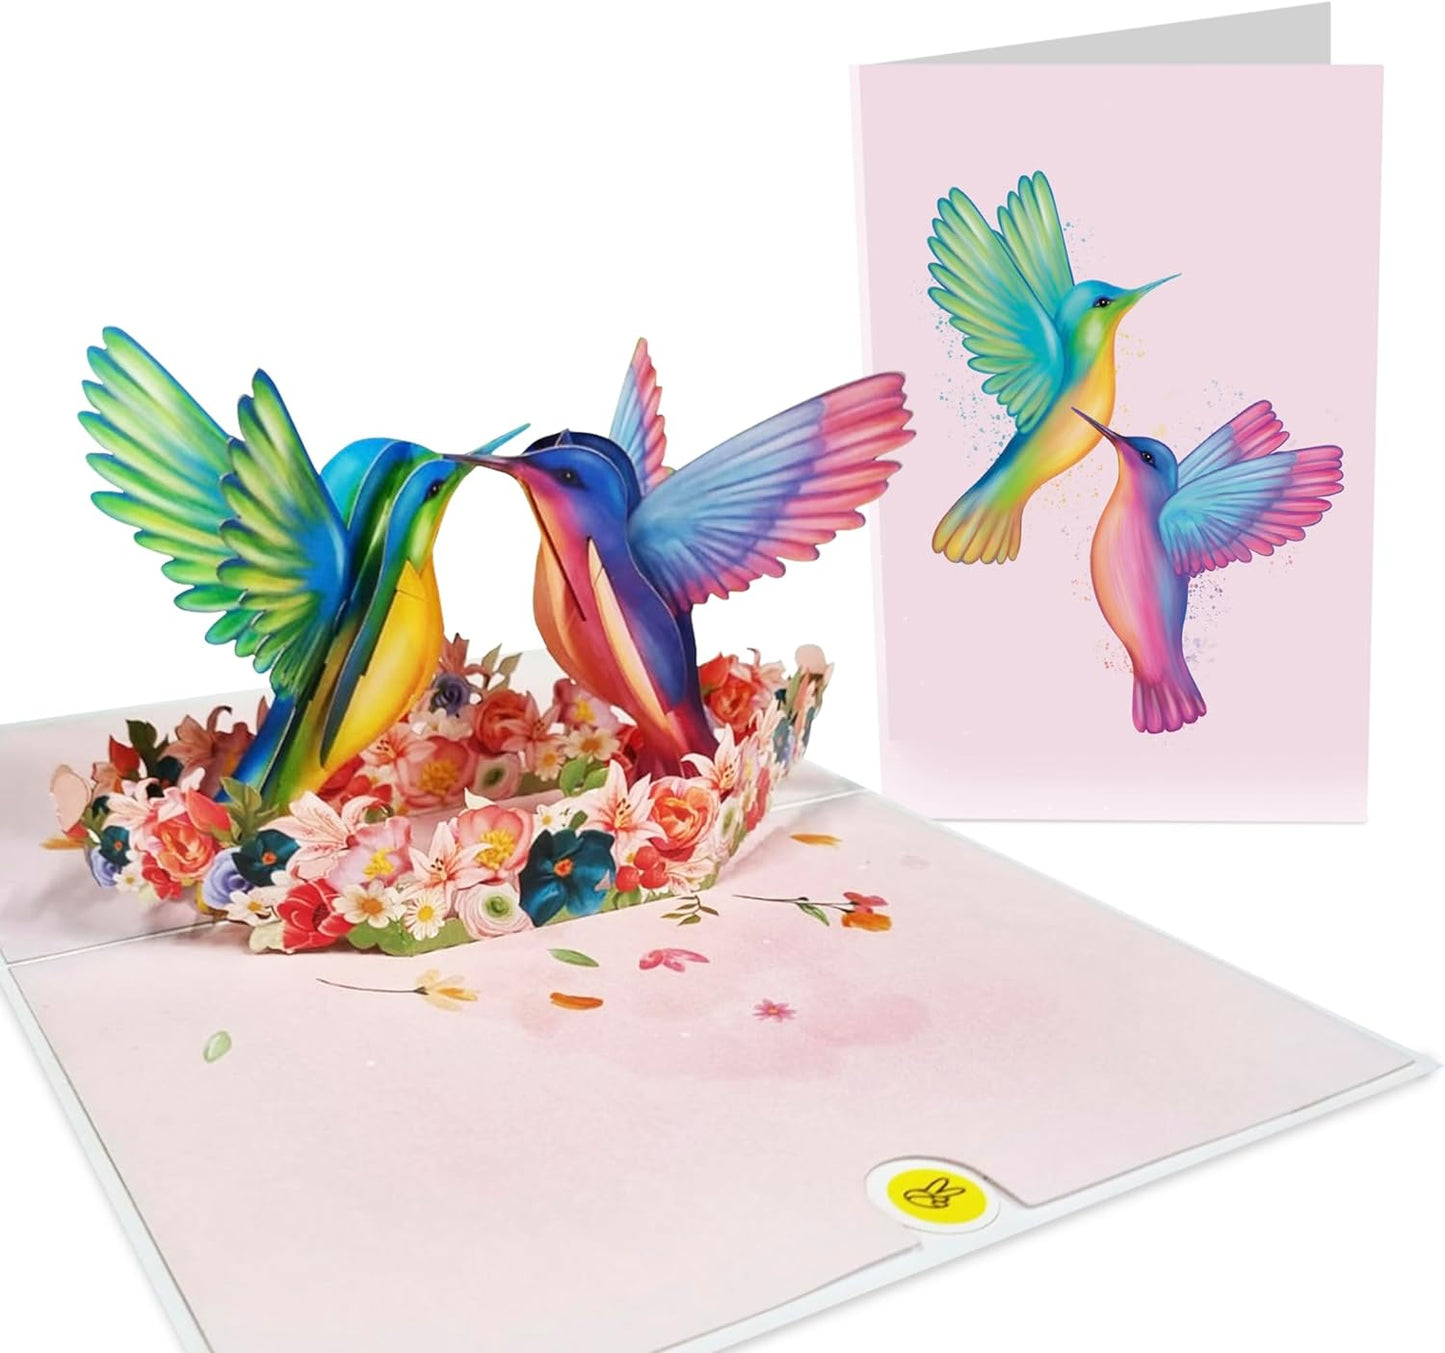 Cute Pop Up Card - Hummingbird - For Men Women Him Her